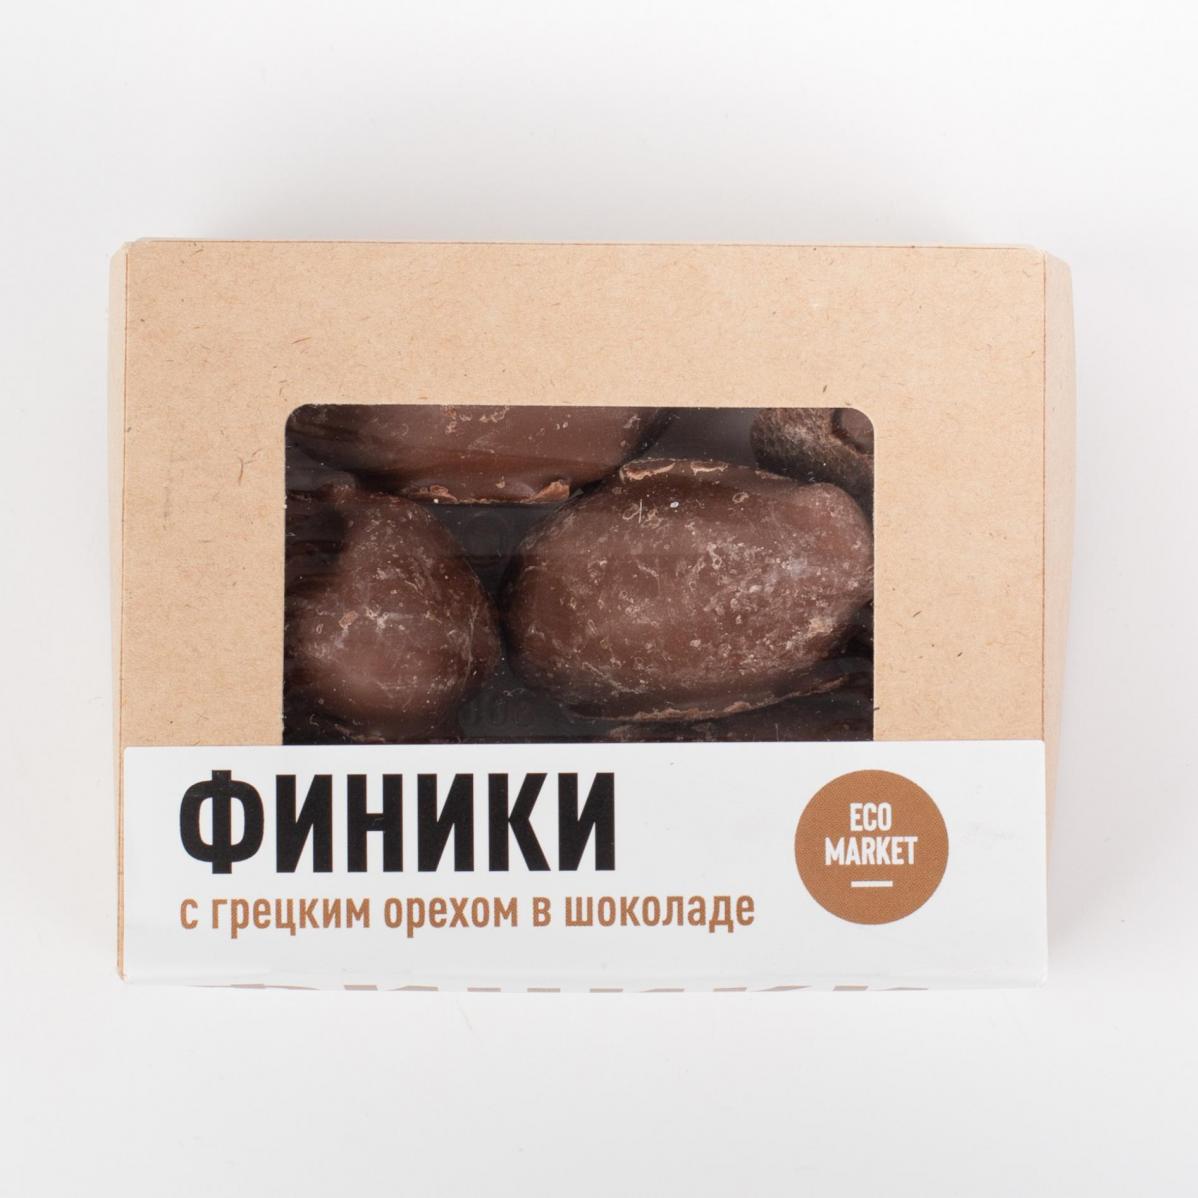 Финики с грецким орехом в шоколаде Ecomarket.ru - 150 г